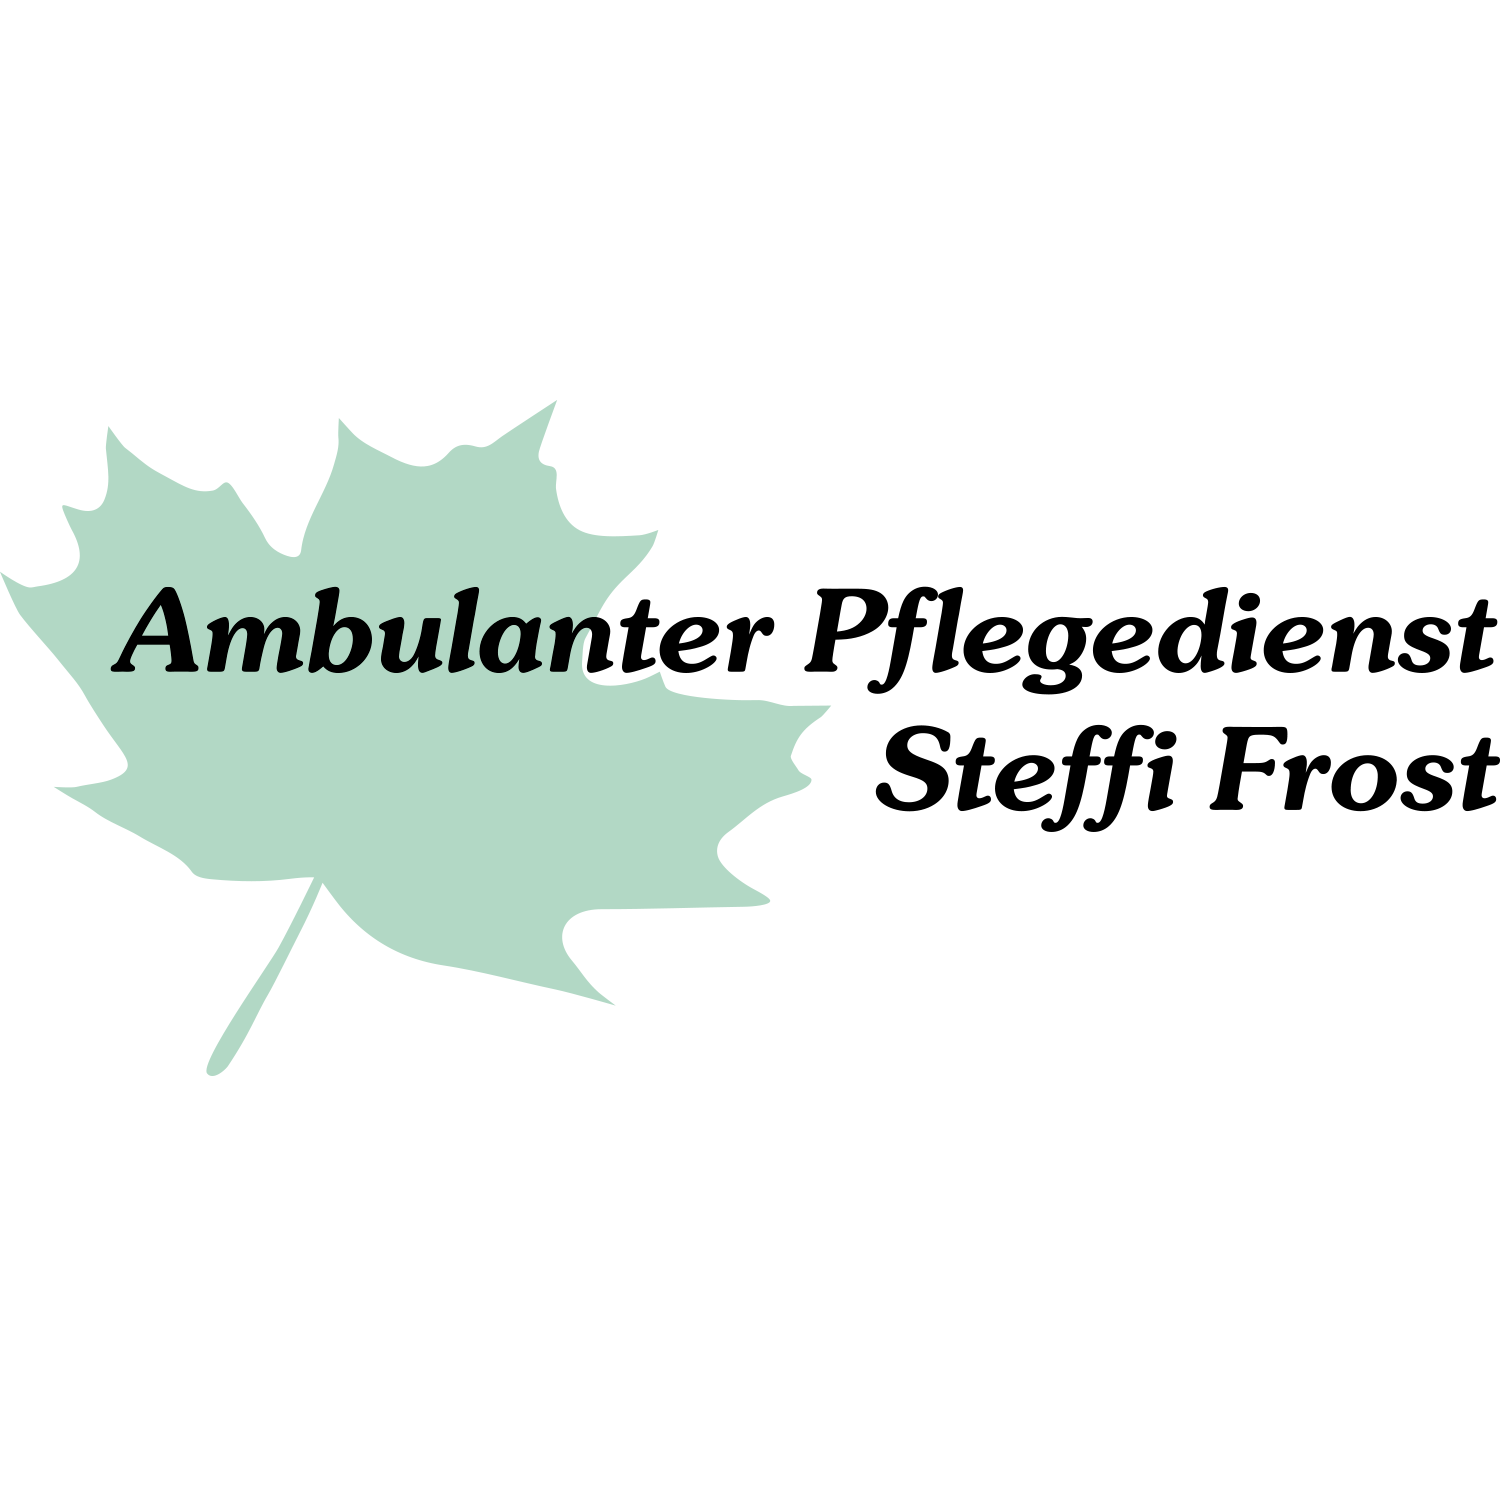 Ambulanter Pflegedienst Steffi Frost in Burgdorf Kreis Hannover - Logo